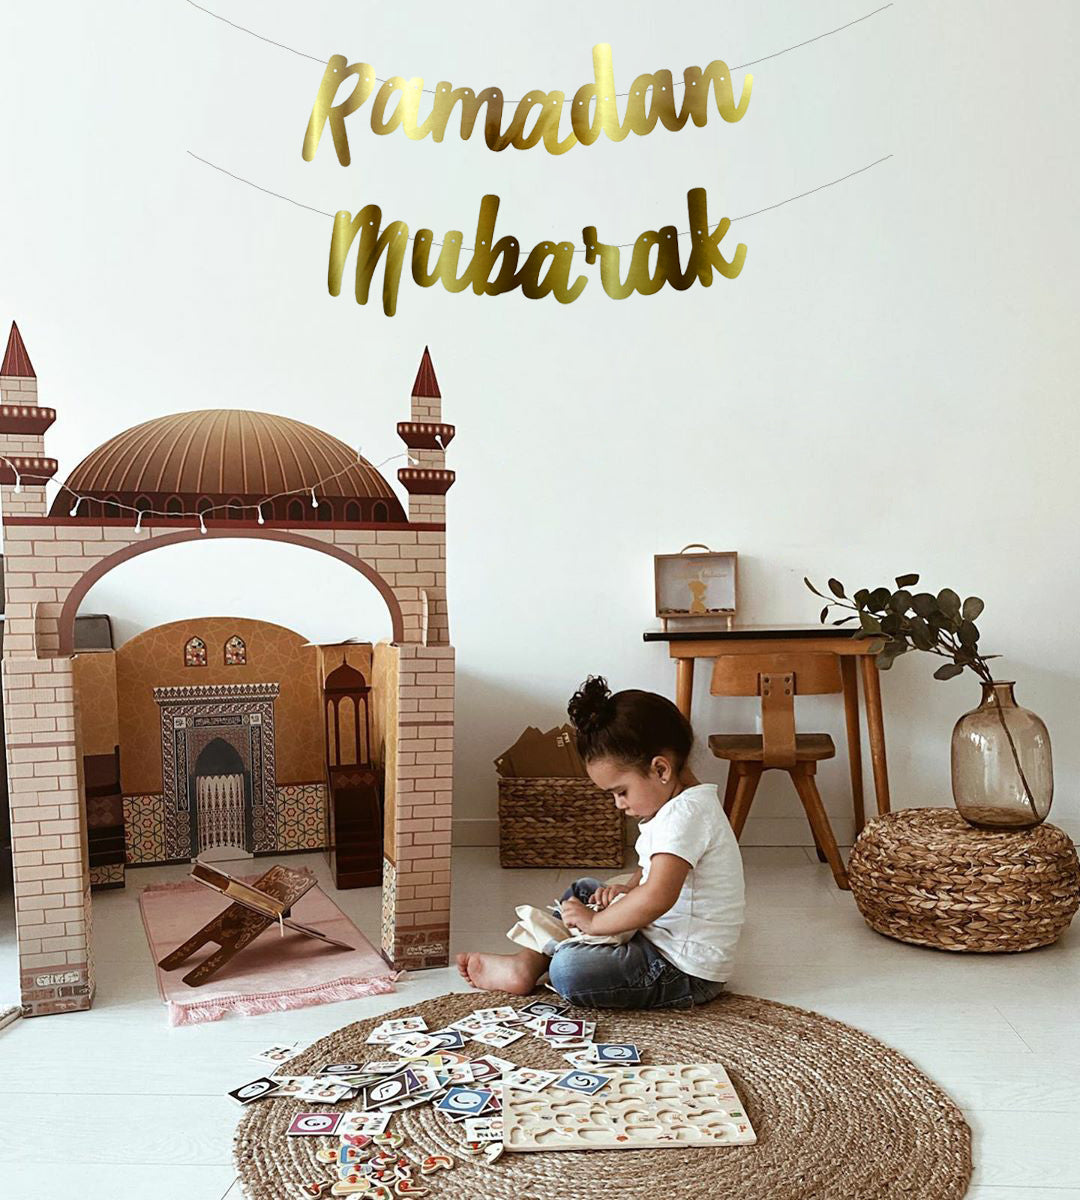 Ramadan Mubarak Kaligrafik Duvar Süsü - Altin Renkli - 200x20 cm